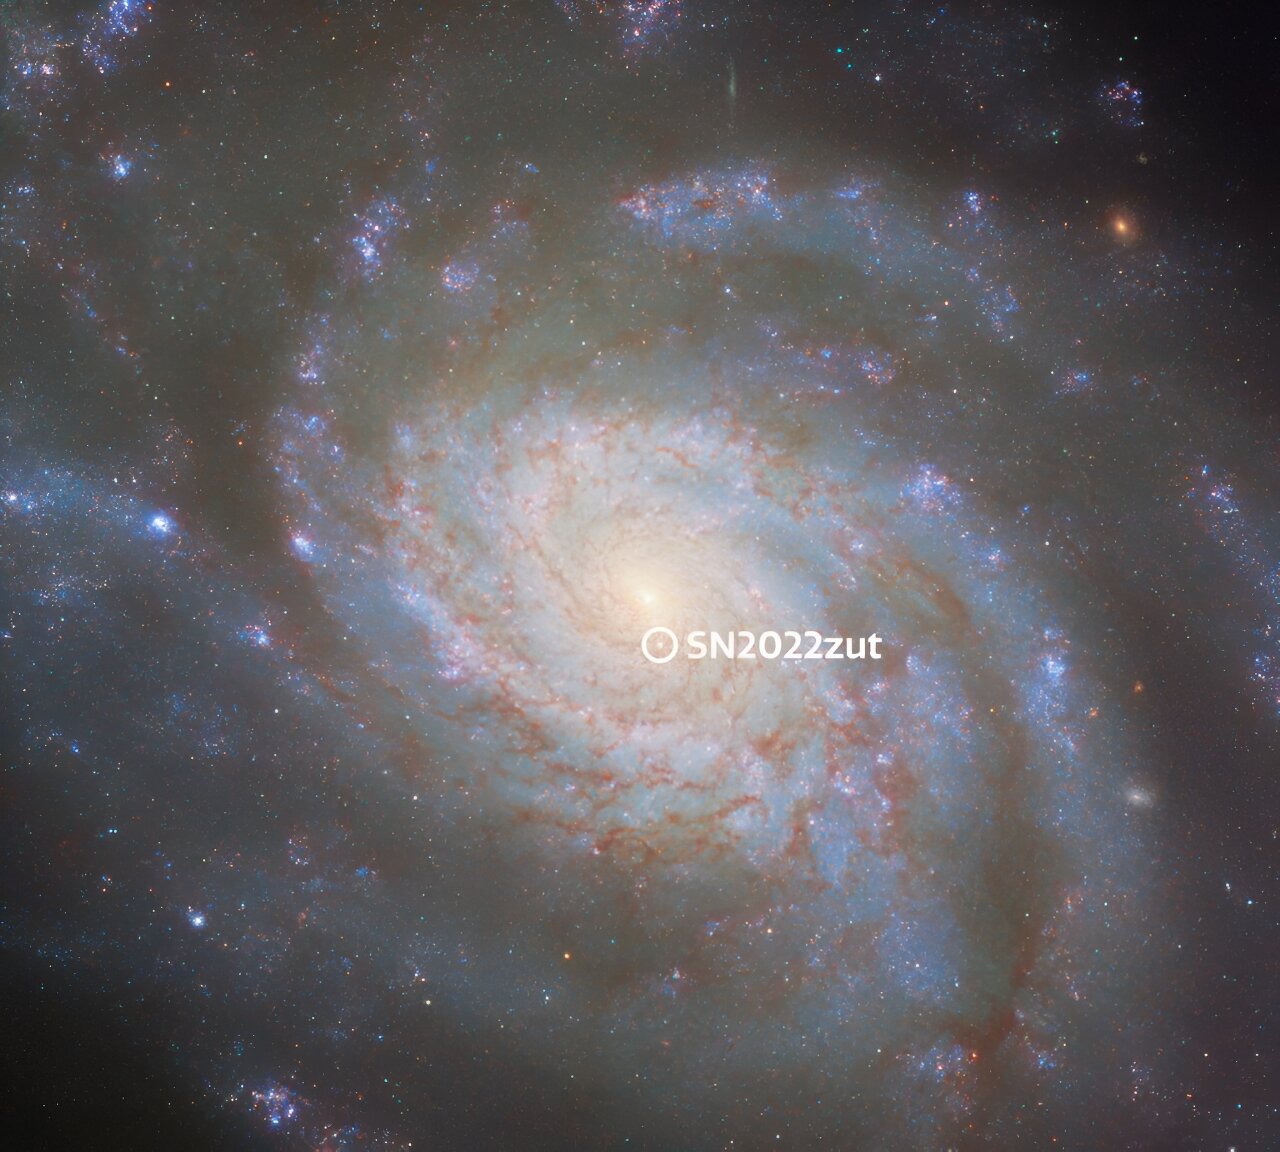 Ova označena Hubbleova slika NGC 3810 prikazuje lokaciju supernove tipa Ia SN 2022zut. To je bila 18.142. supernova otkrivena 2022. godine. Zasluge: ESA/Hubble & NASA, D. Sand, R. J. Foley.